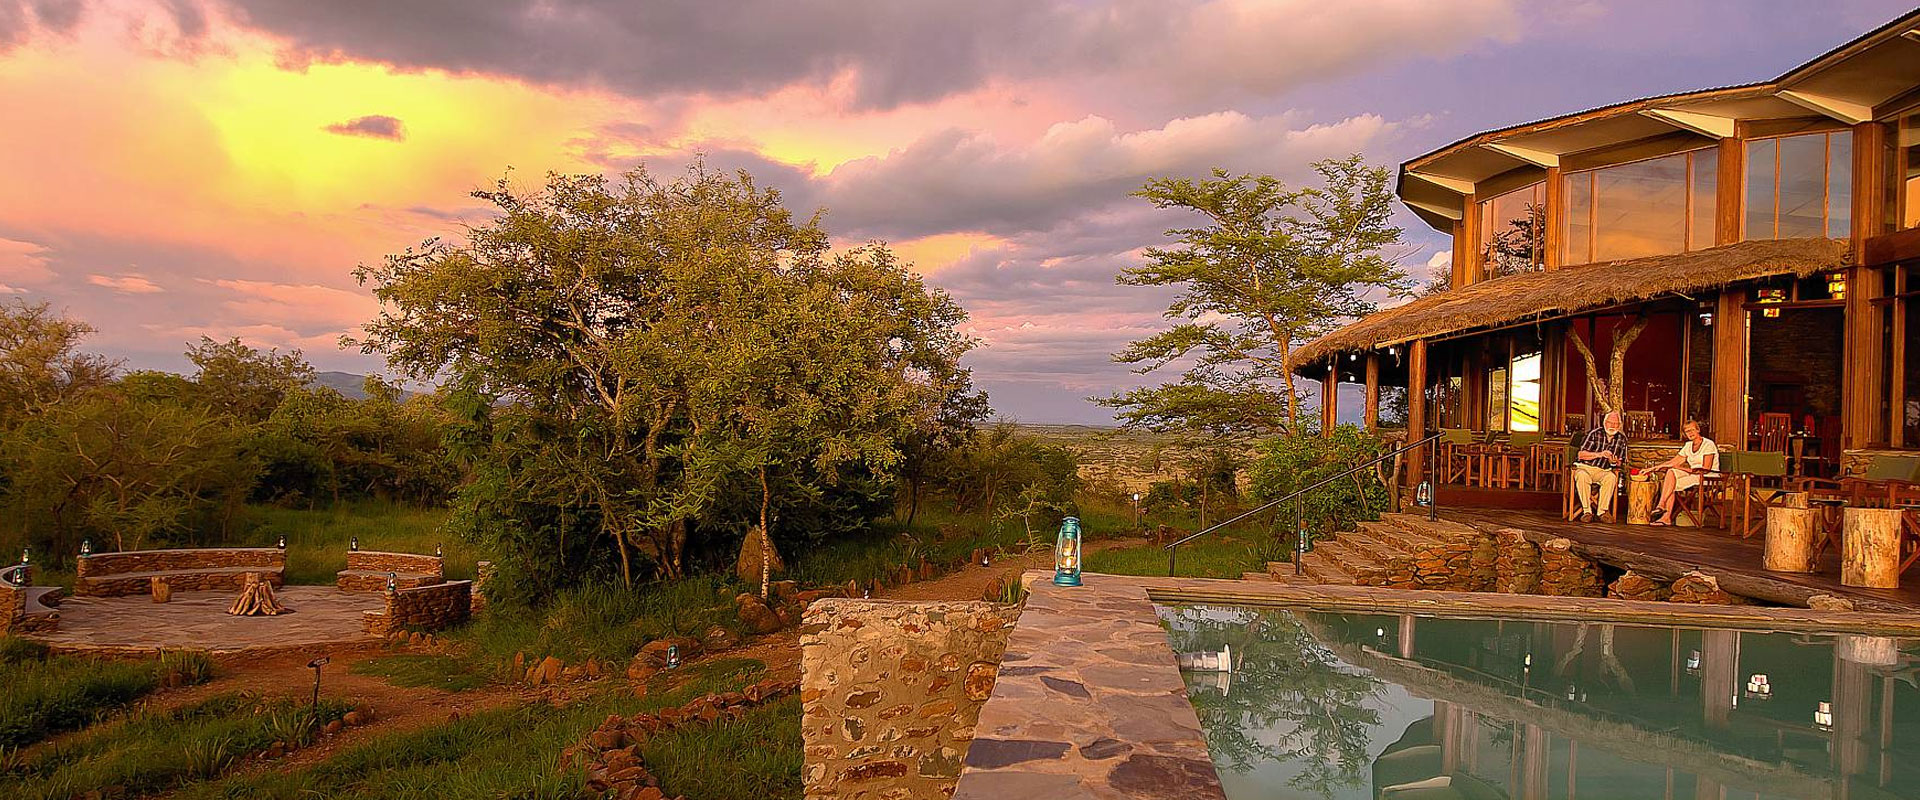 7 Days Tanzania Lodge Safari